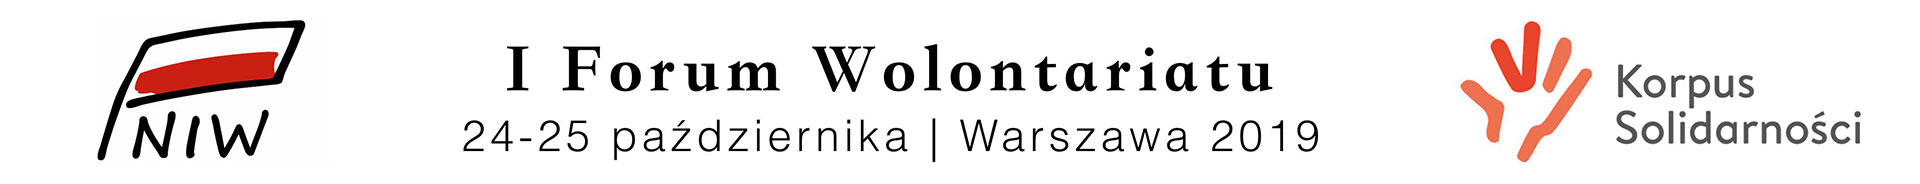 I forum wolontariatu